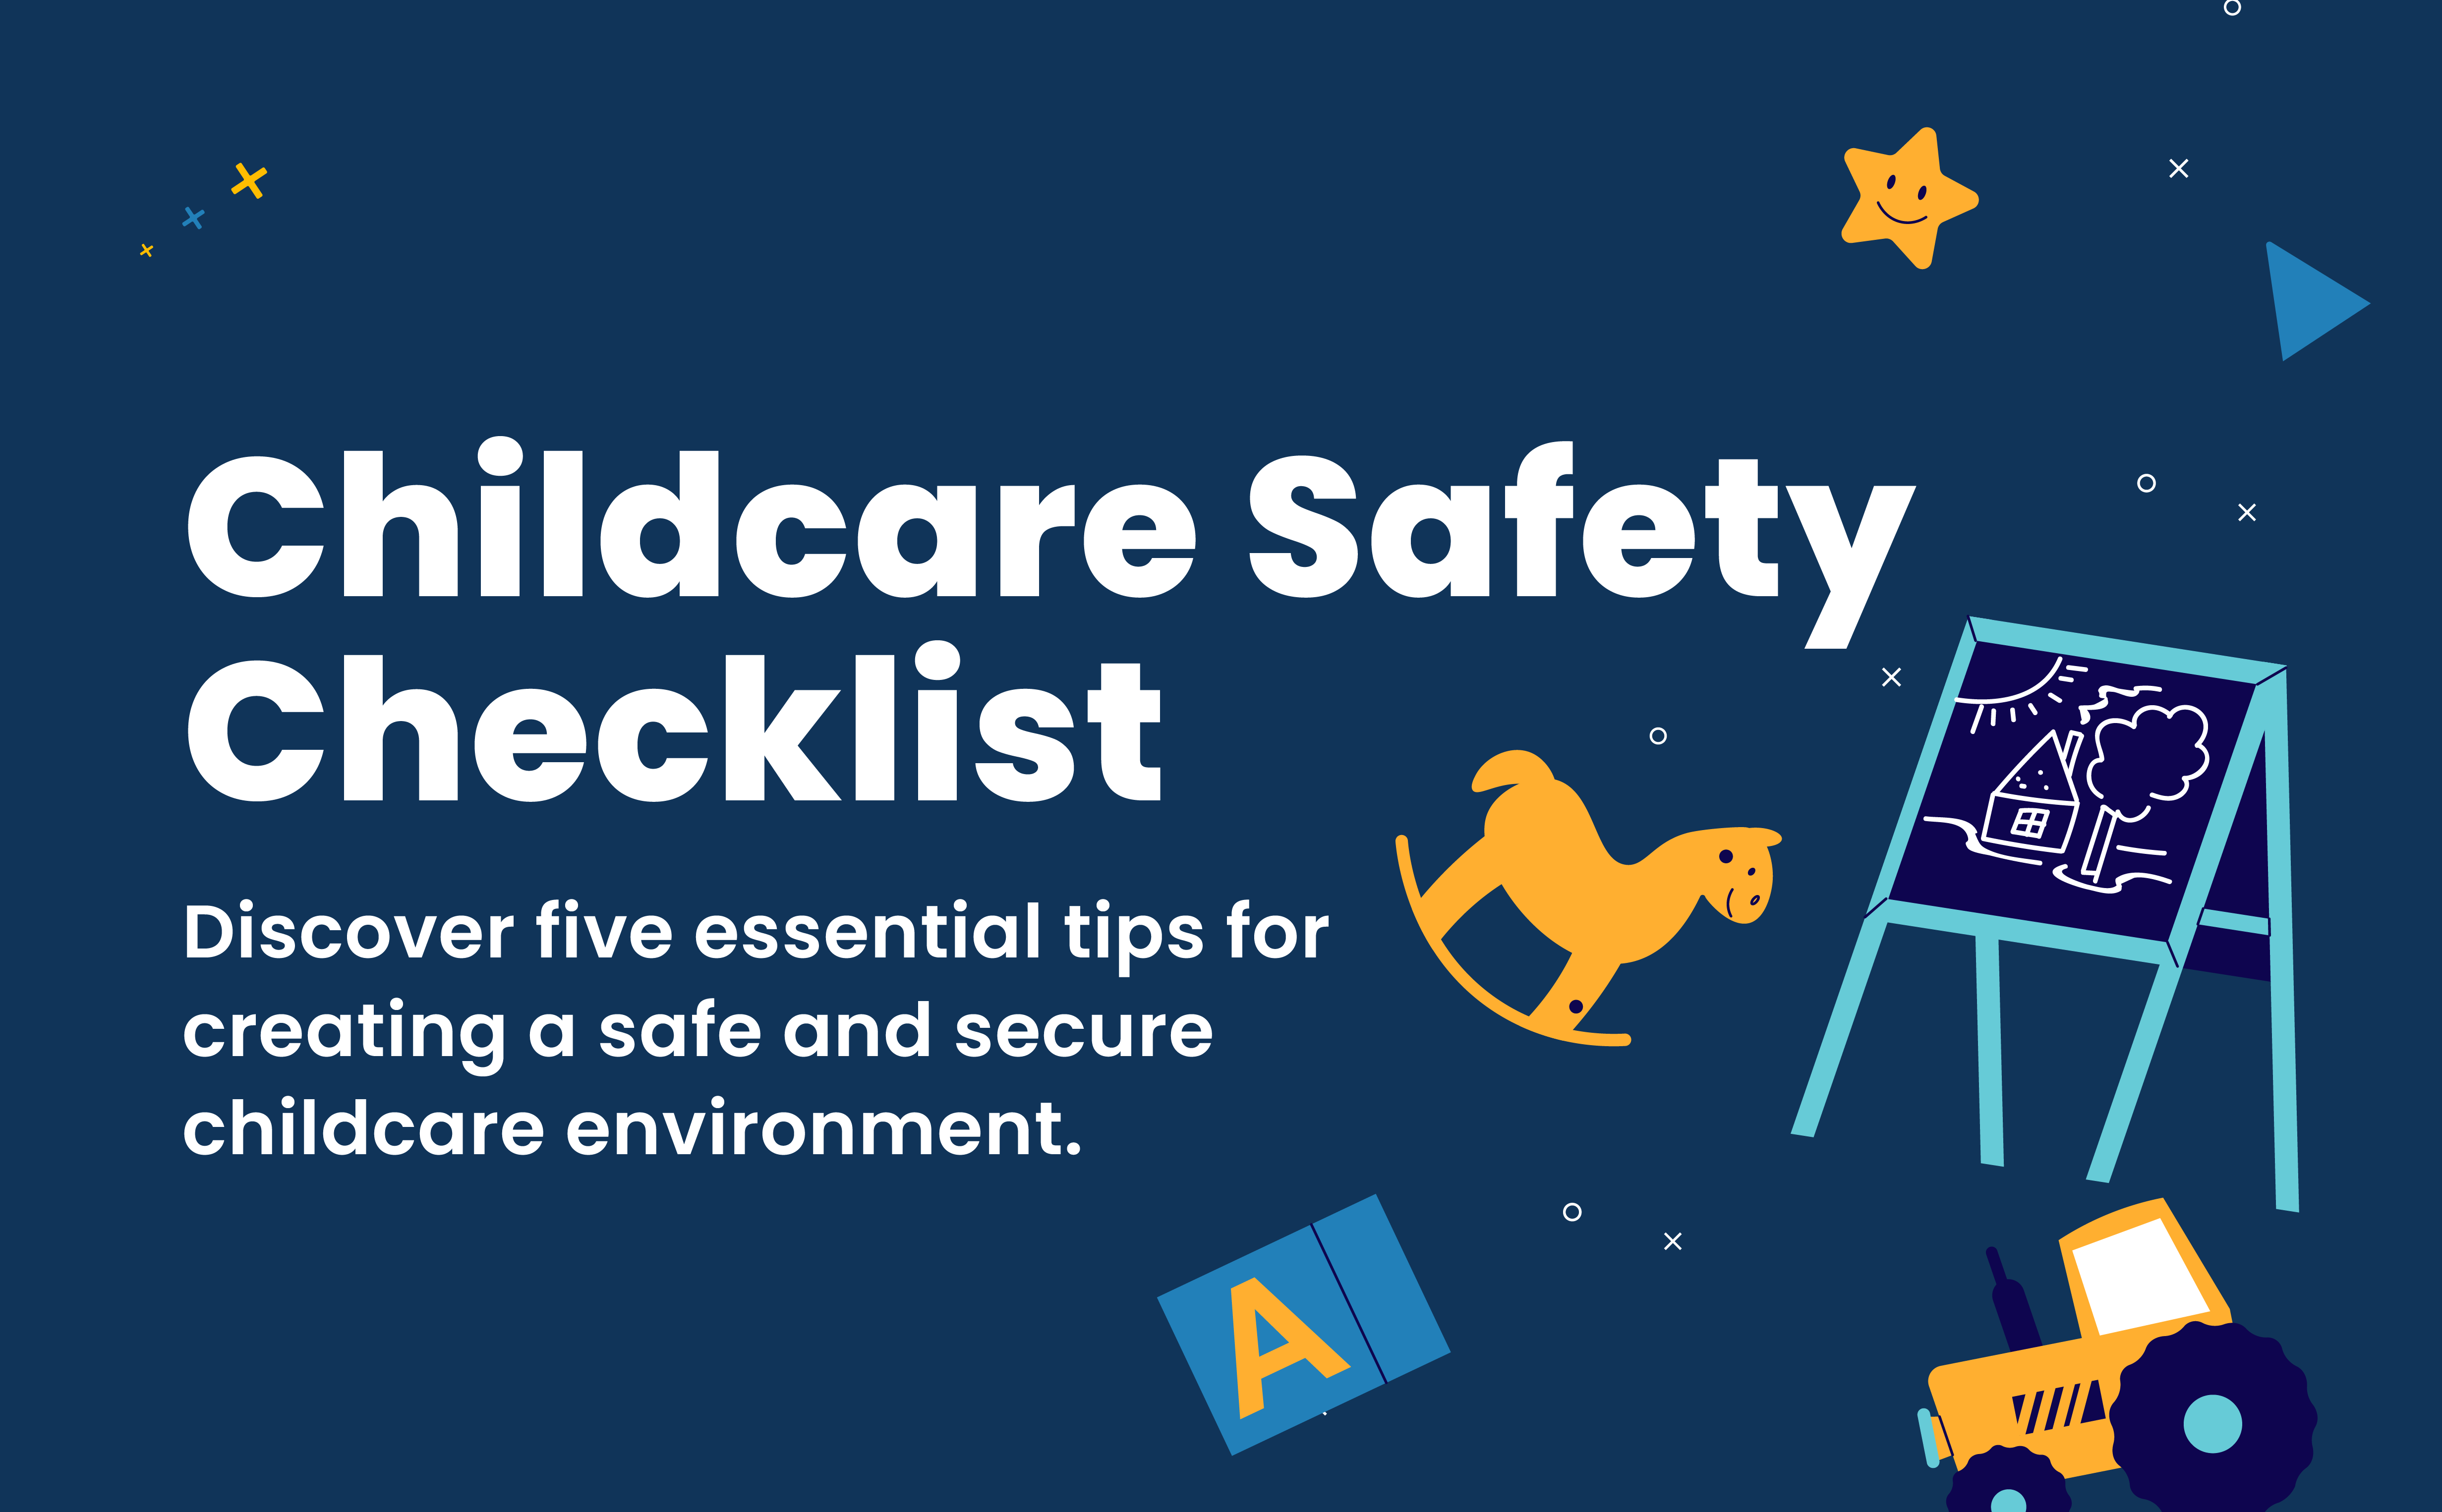 Childcare Safety Checklist